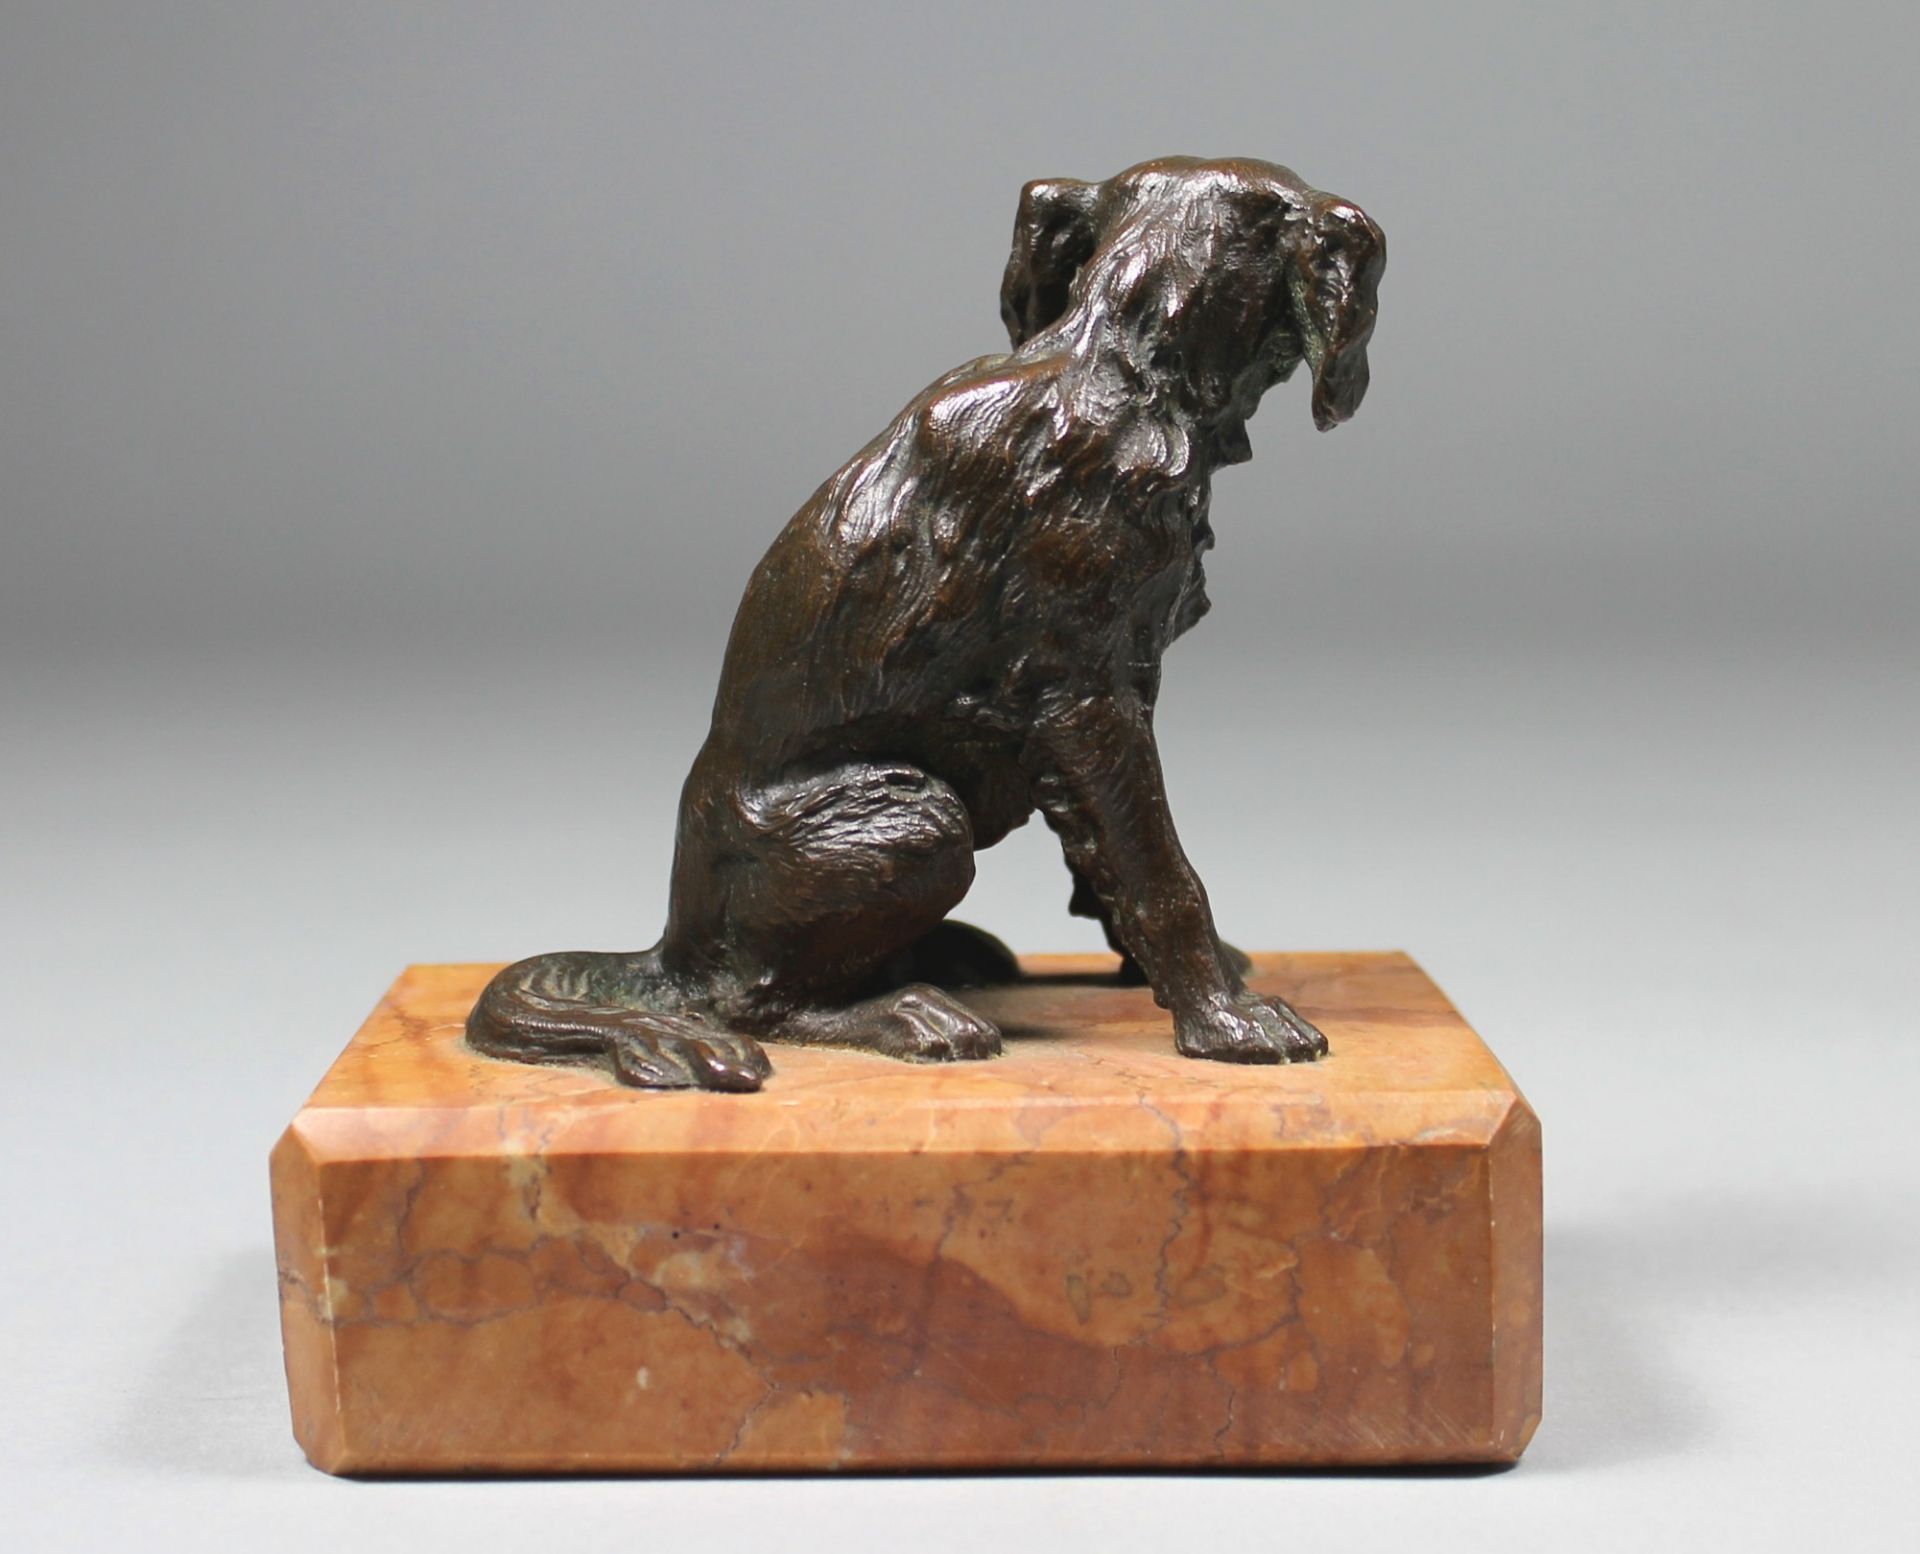 1 kleine Bronzefigur auf Marmorplinthe montiert "sitzender Hund", keine Signatur erkennbar, ca. 12cm - Image 3 of 3